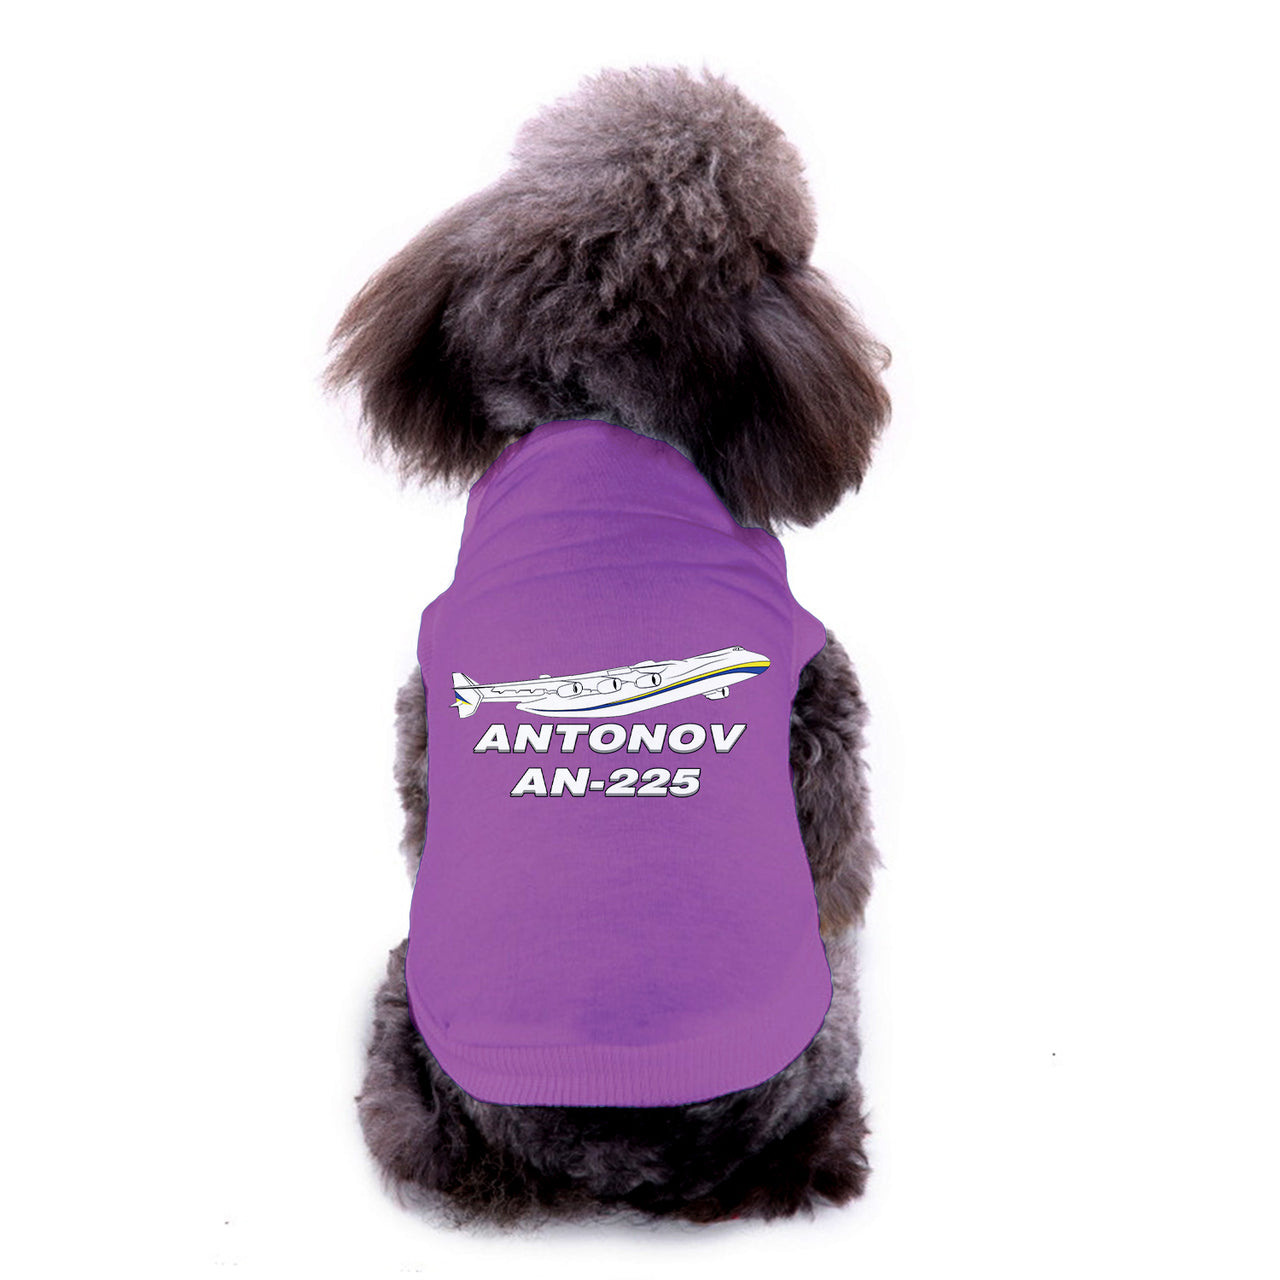 Antonov AN-225 (27) Designed Dog Pet Vests